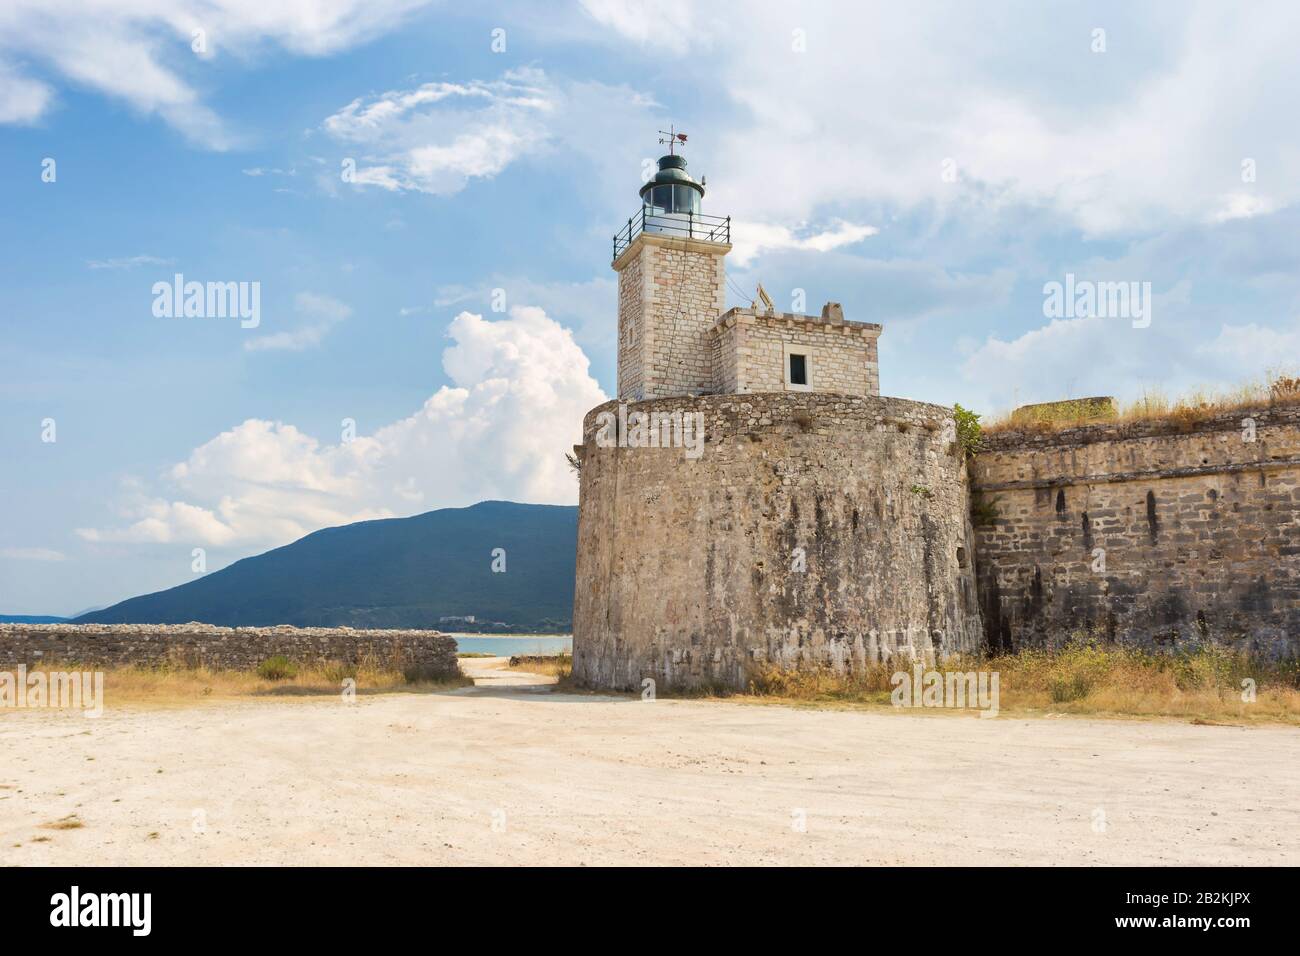 The Venetian Castle of Agia Mavra (Santa Maura), Lefkada island, Greece. Stock Photo